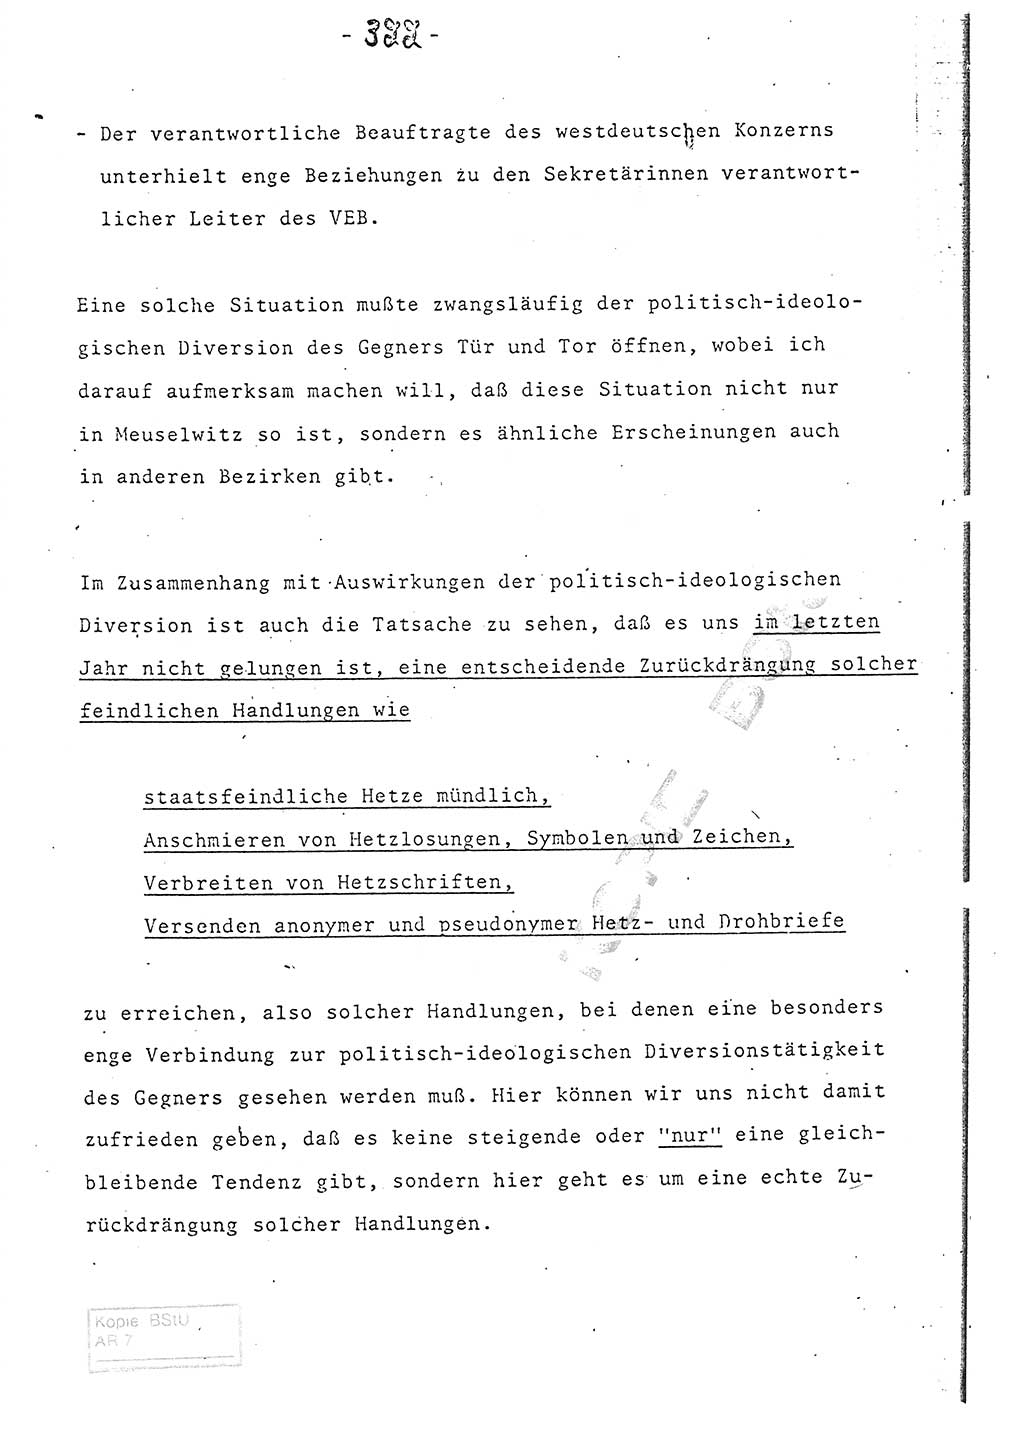 Referat (Entwurf) des Genossen Minister (Generaloberst Erich Mielke) auf der Dienstkonferenz 1972, Ministerium für Staatssicherheit (MfS) [Deutsche Demokratische Republik (DDR)], Der Minister, Geheime Verschlußsache (GVS) 008-150/72, Berlin 25.2.1972, Seite 322 (Ref. Entw. DK MfS DDR Min. GVS 008-150/72 1972, S. 322)